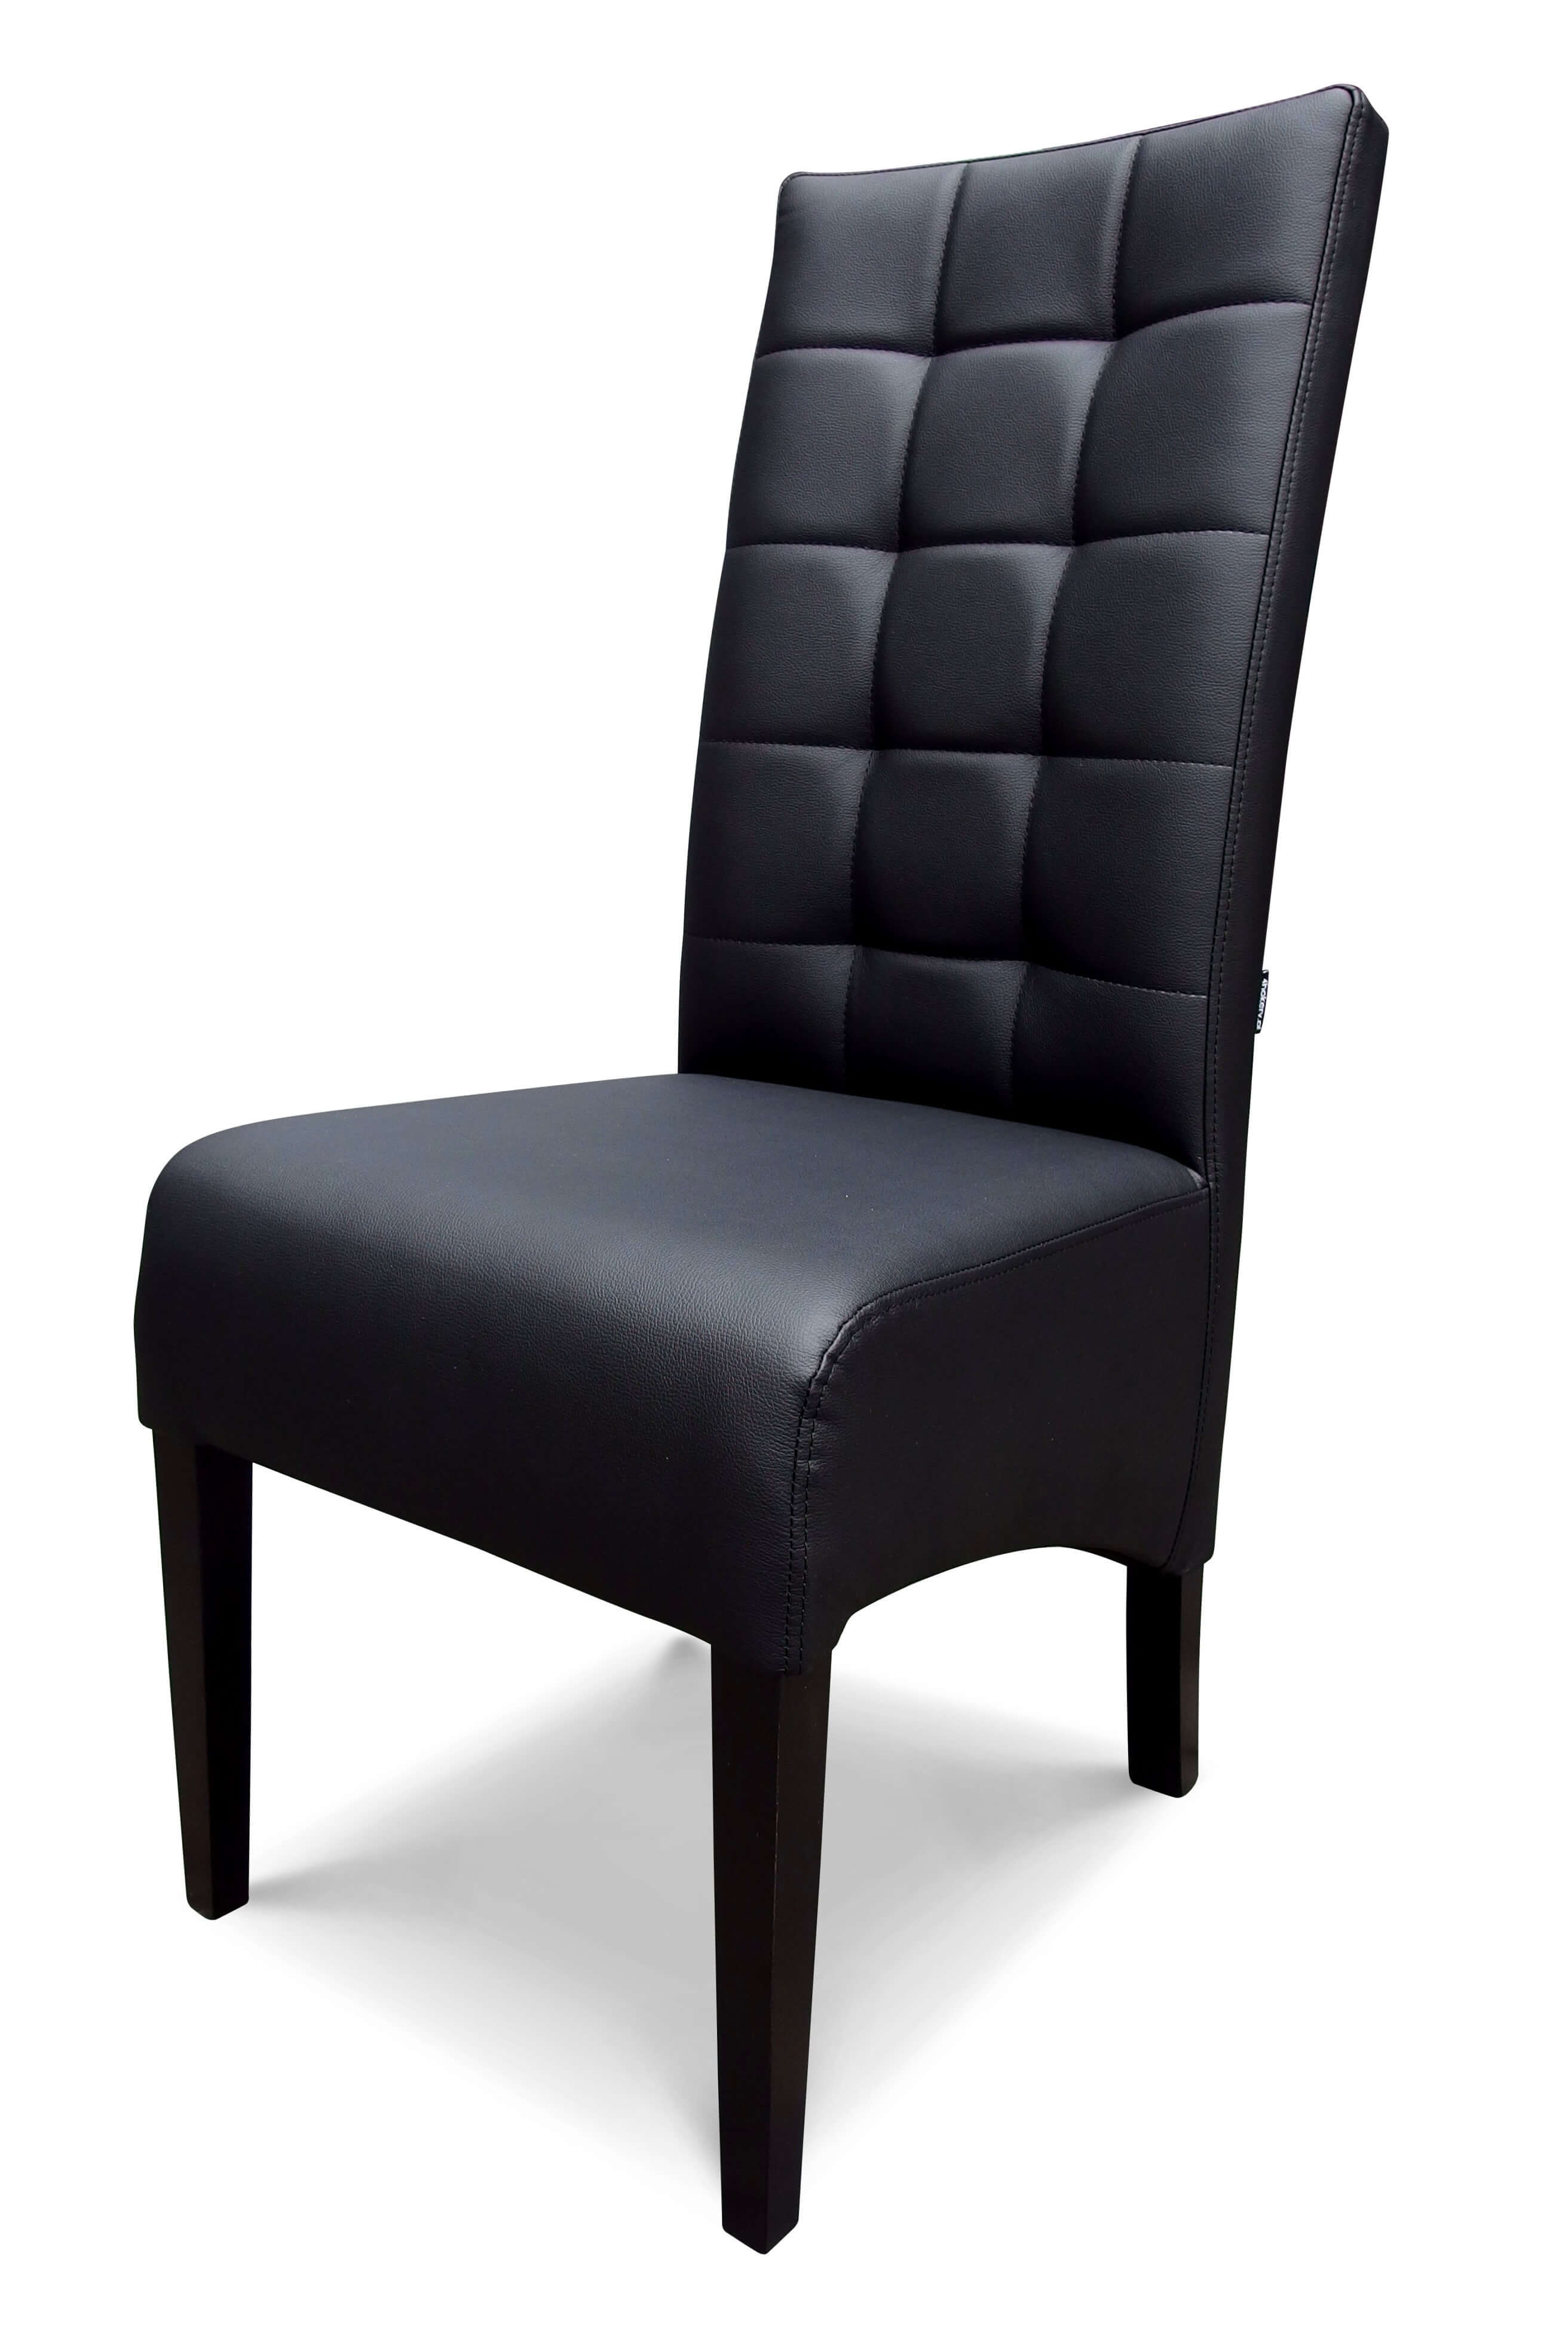 Tunis - krzesło grube, skośne, pikowane w kwadraty. Wysokość 108cm.